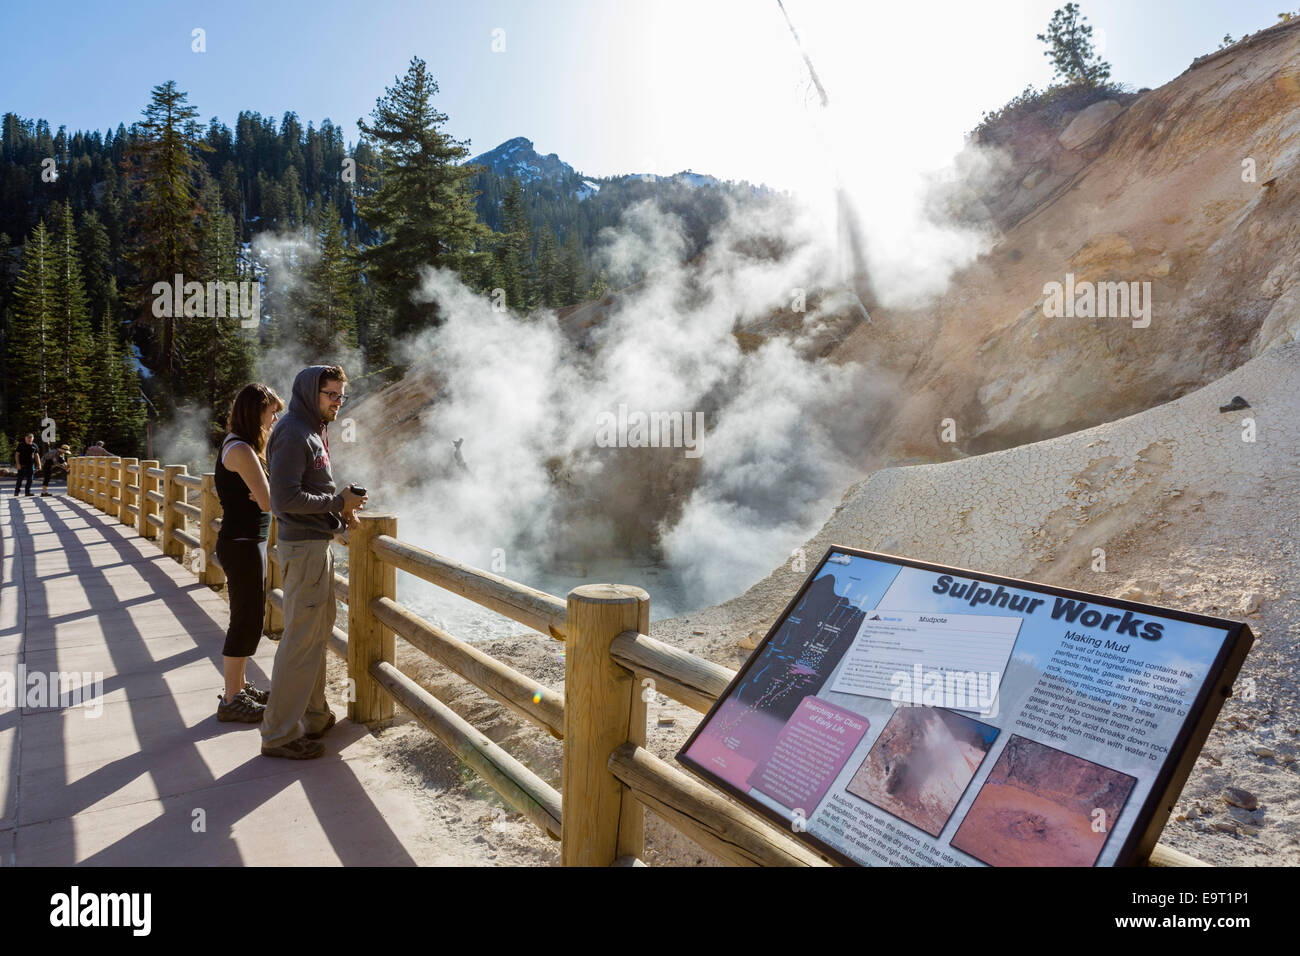 Mudpot à la zone géothermique fonctionne de soufre, Lassen Volcanic National Park, Cascades, dans le Nord de la Californie, USA Banque D'Images